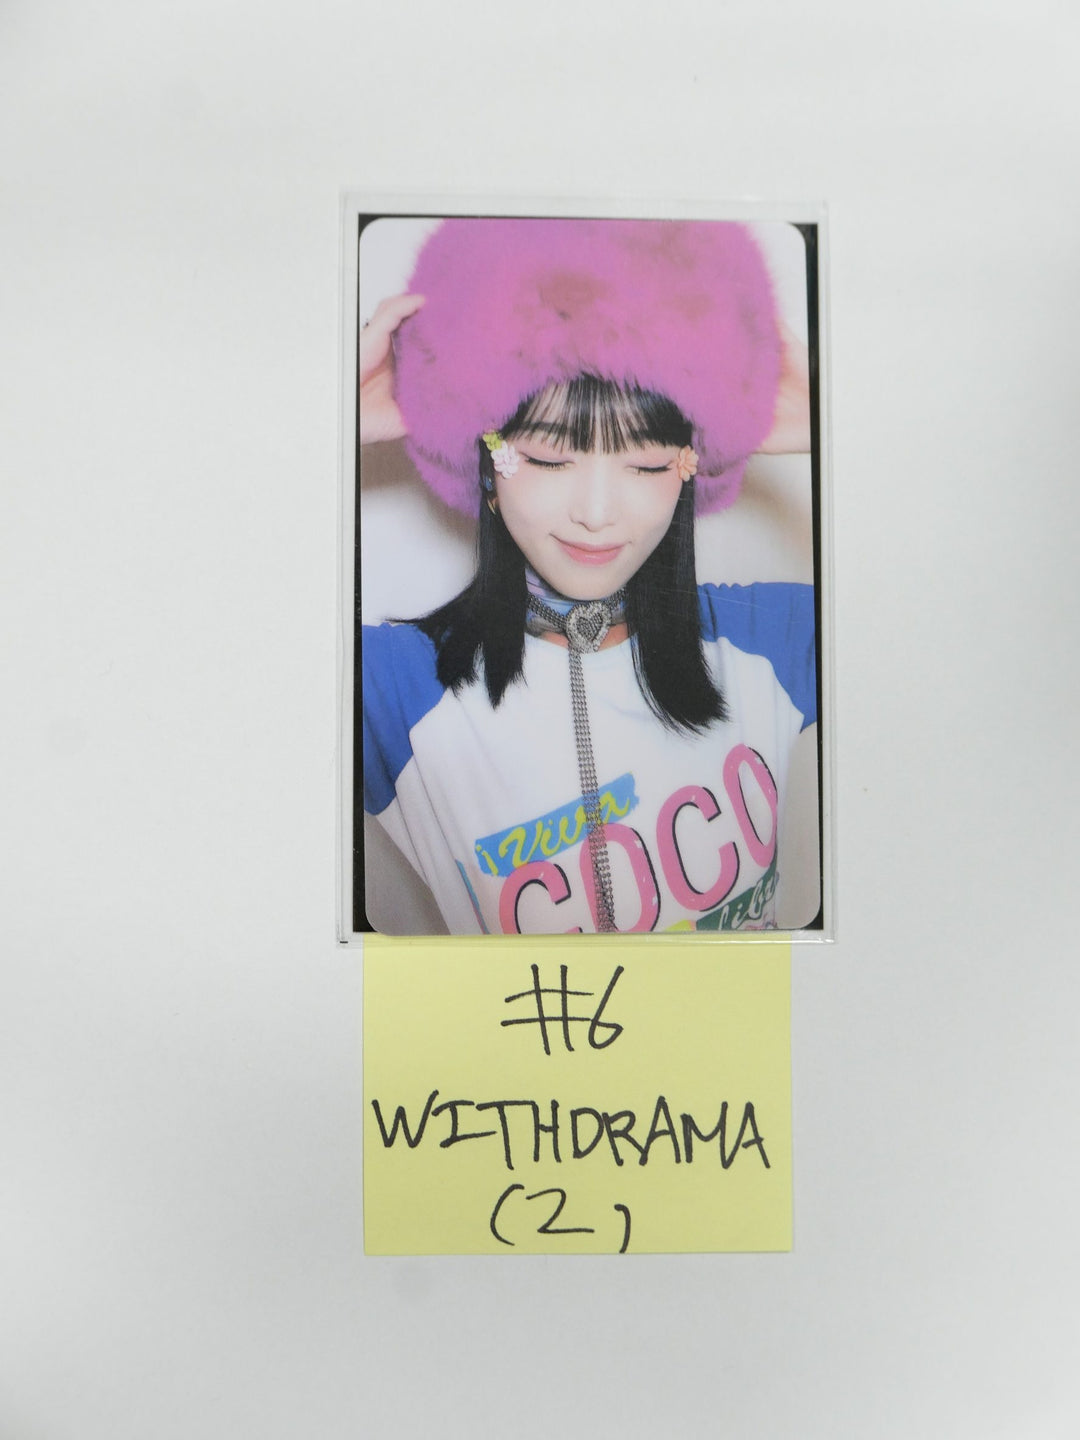 예나 "ˣ‿ˣ (SMiLEY)" - Withdrama Luckydraw 플라스틱 PVC 포토카드